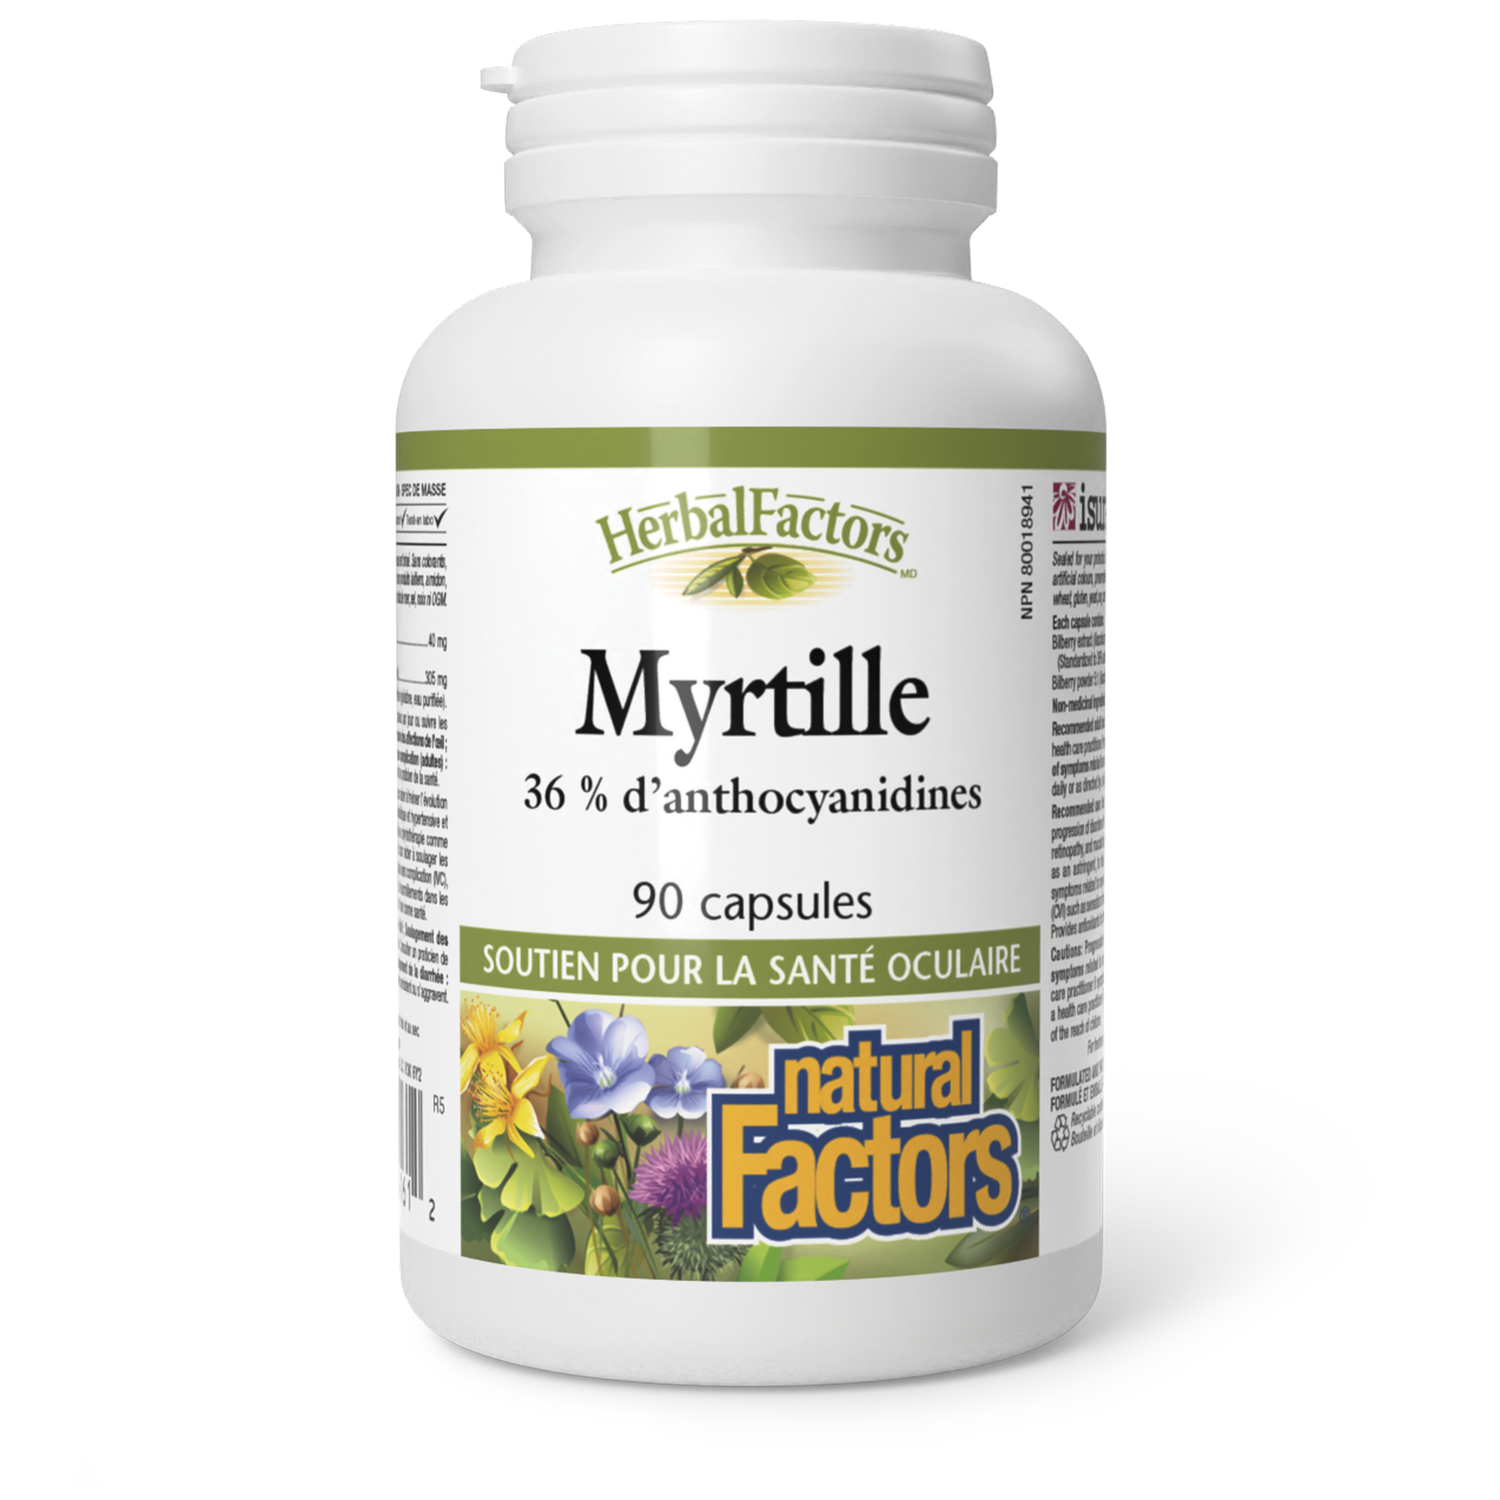 Myrtille, HerbalFactors, Natural Factors|v|image|4161